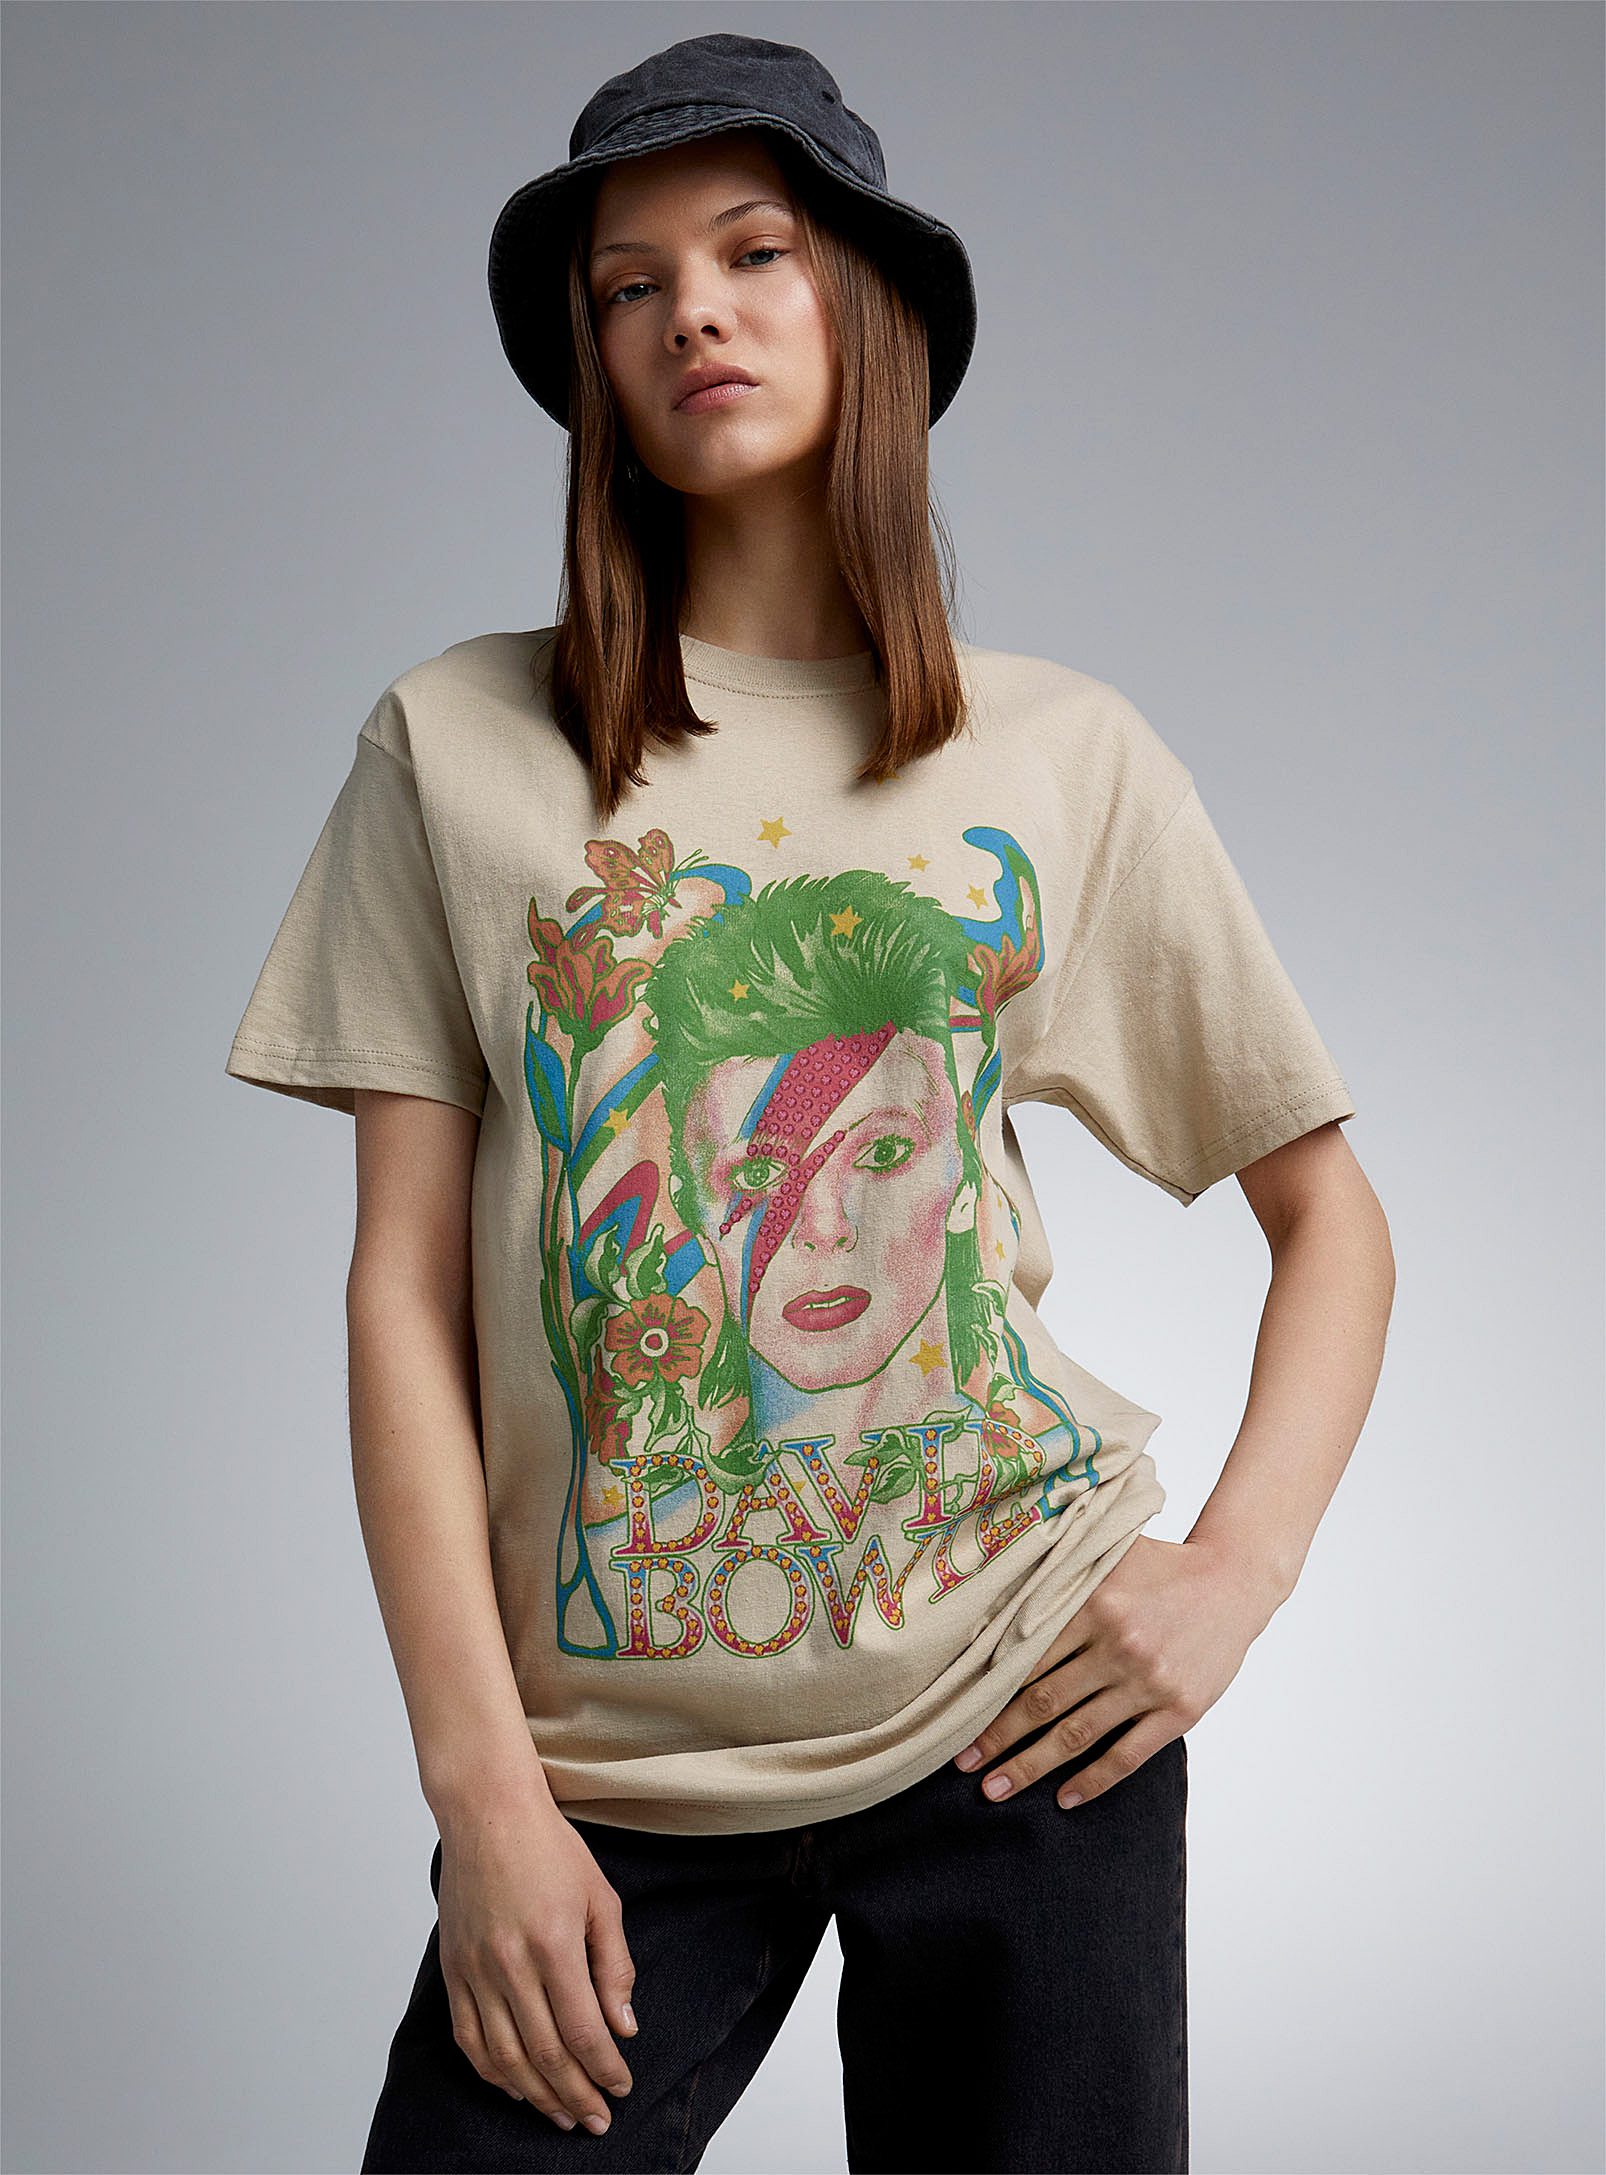 Twik - Women's David Bowie Tee Shirt